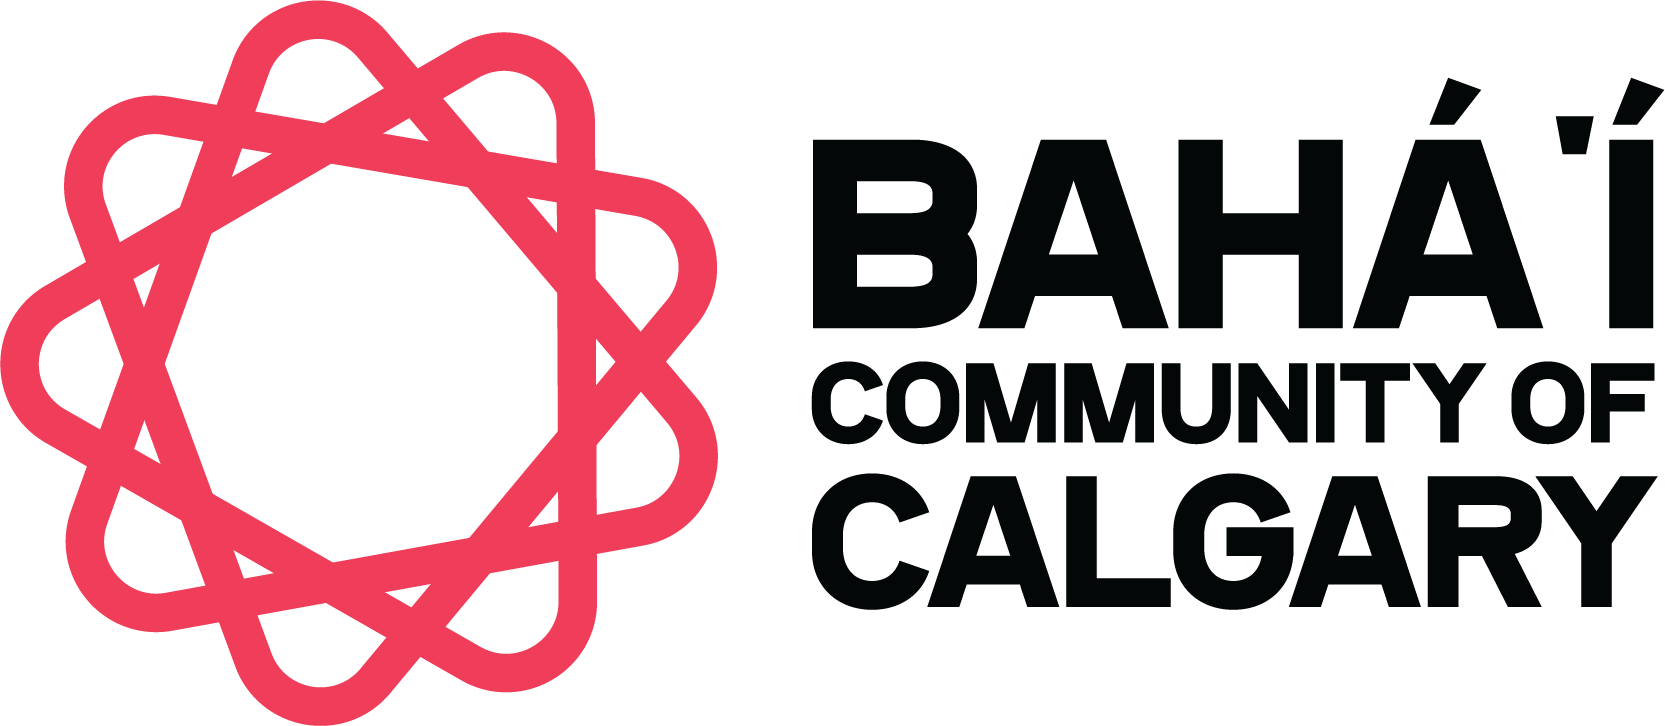 Calgary Baháʼí Community